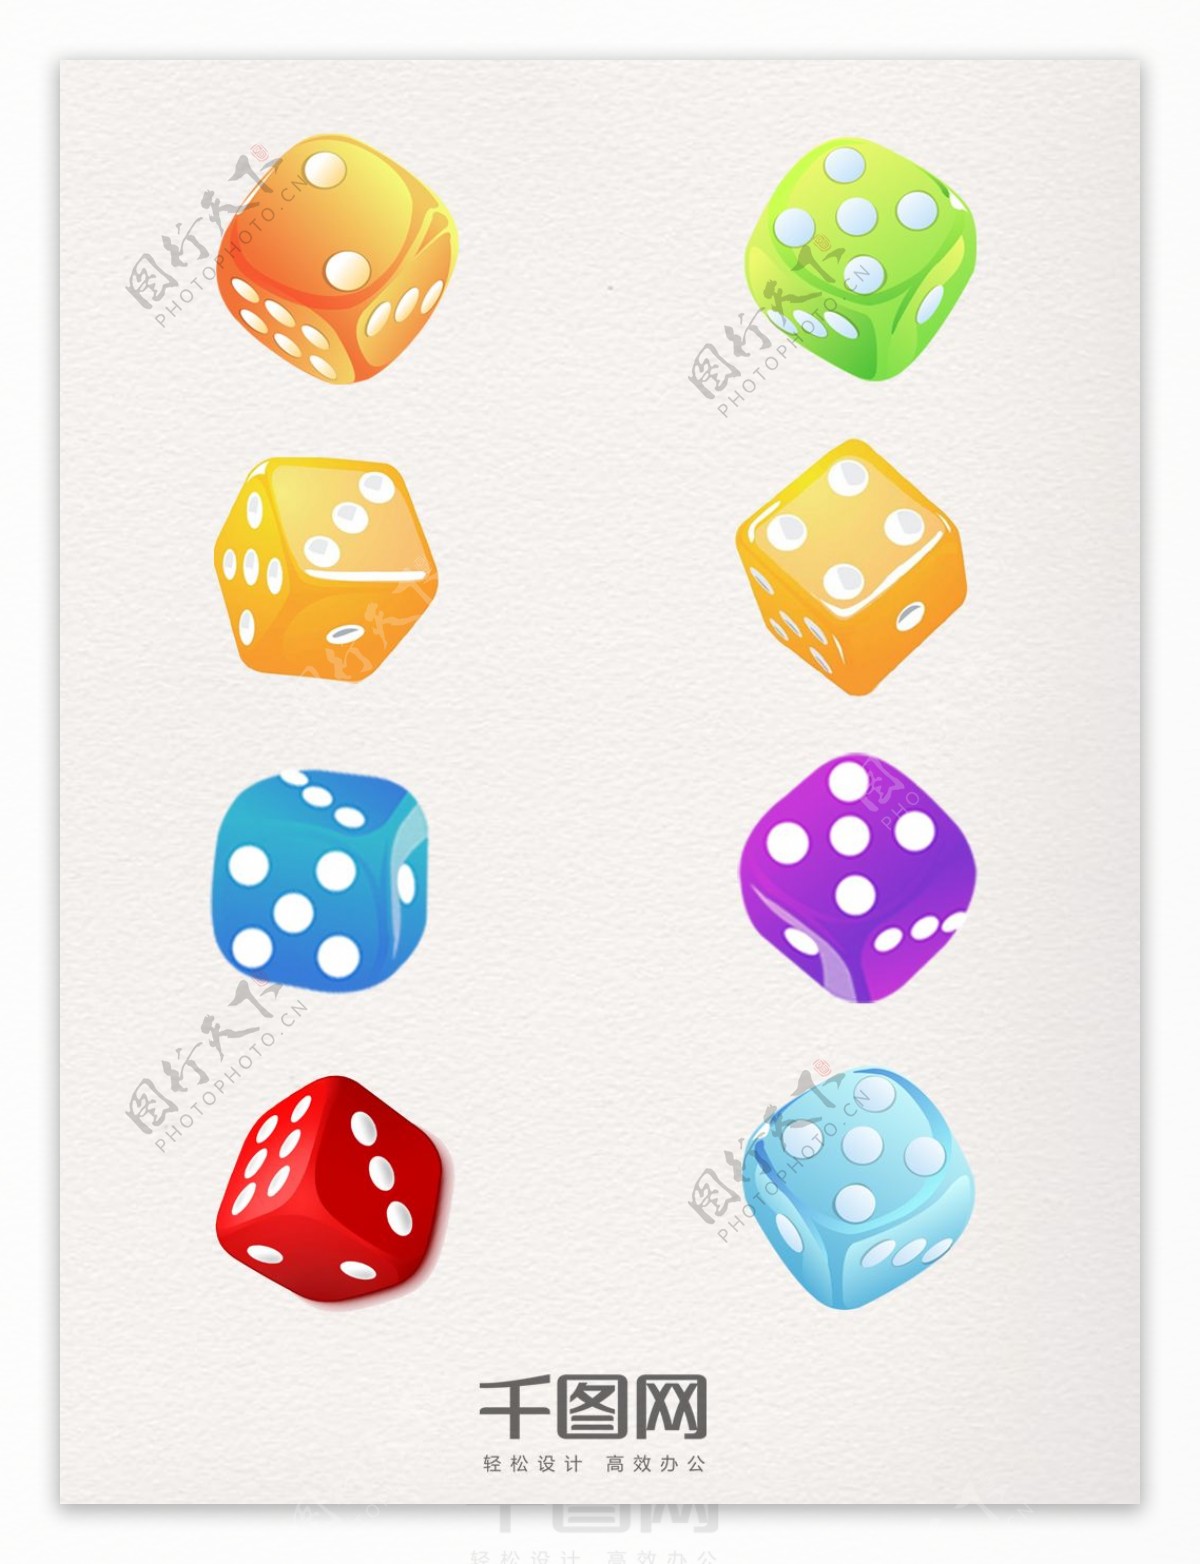 彩色装饰骰子图案元素集合